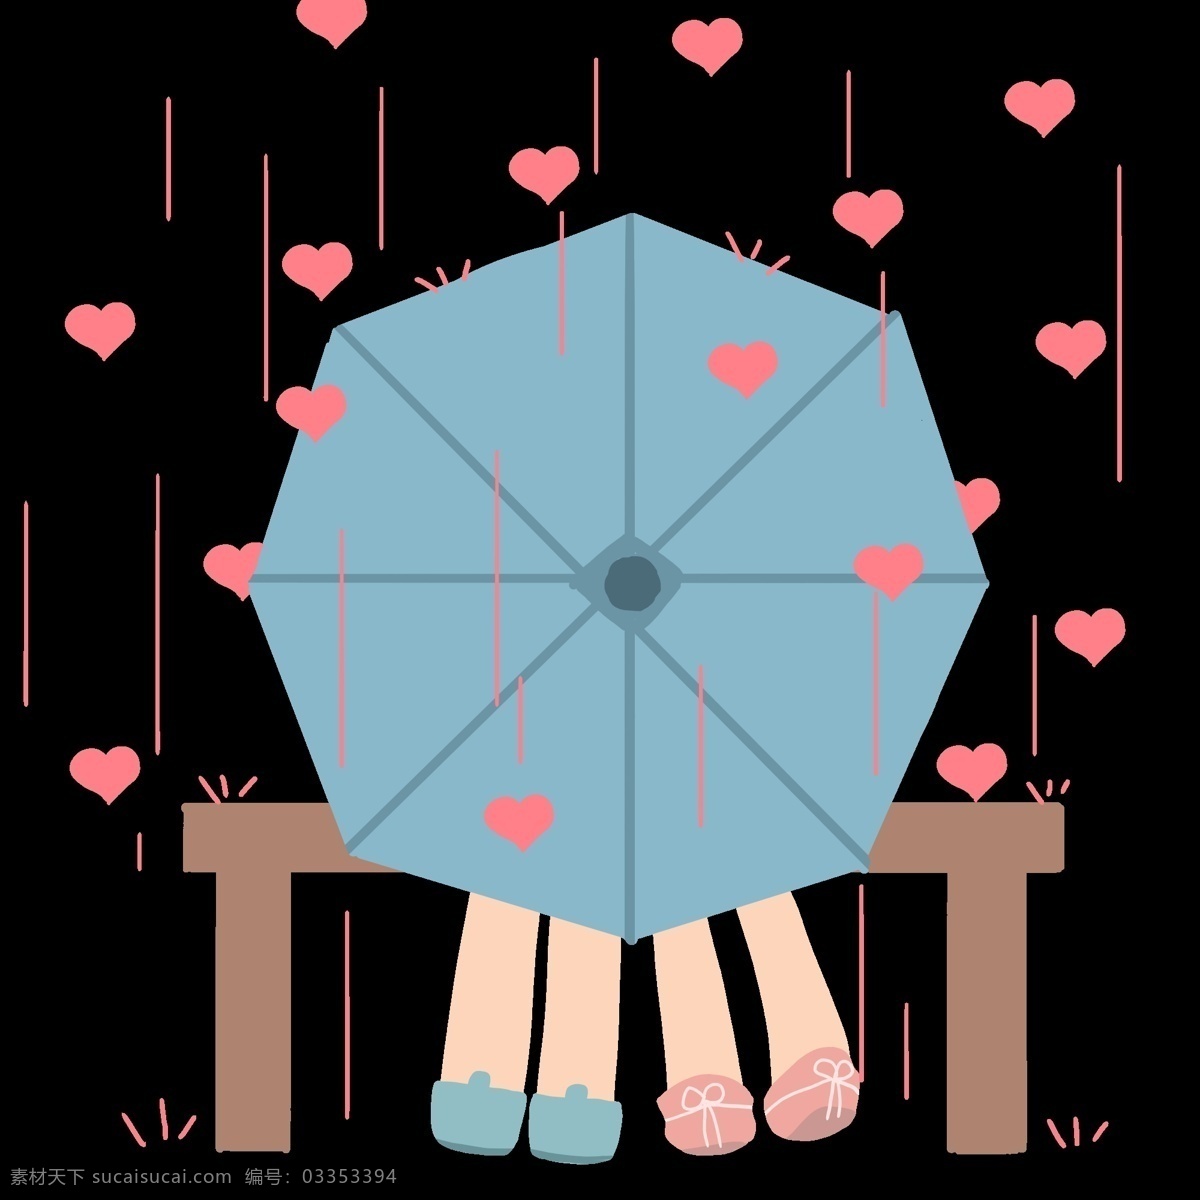 蓝色 撑开 雨伞 插图 卡通人物 蓝色雨伞 撑开的雨伞 红色心形 漂浮的心形 棕色凳子 长长的凳子 有爱的画面